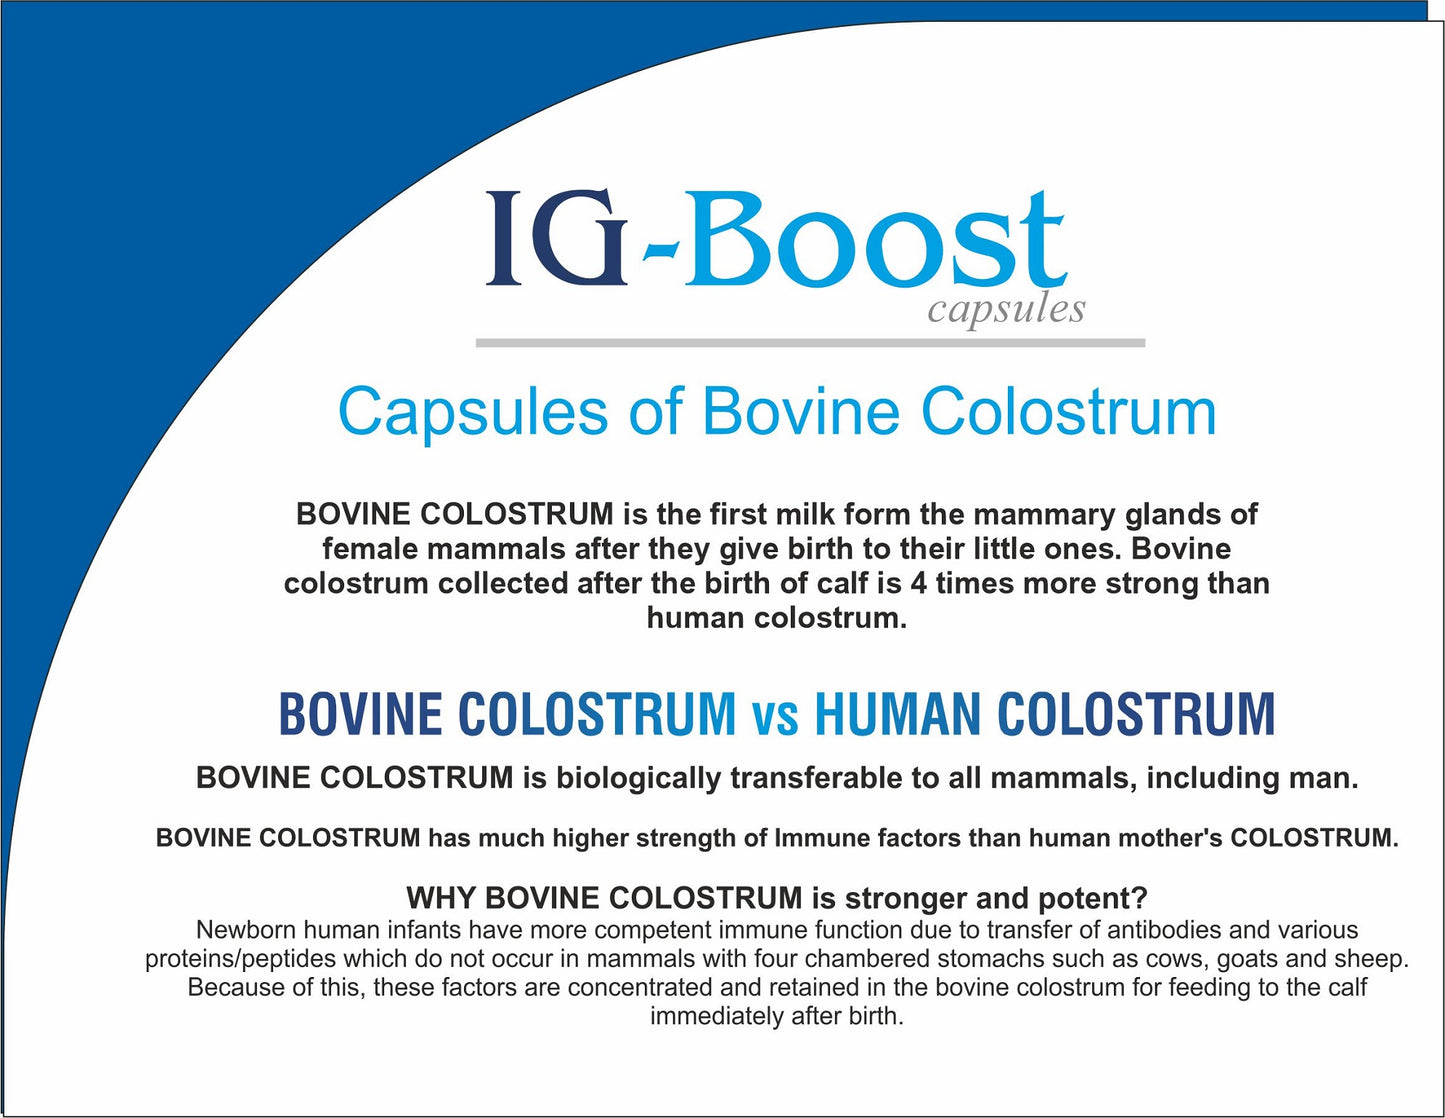 IG Boost Capsules- Bovine Colostrum